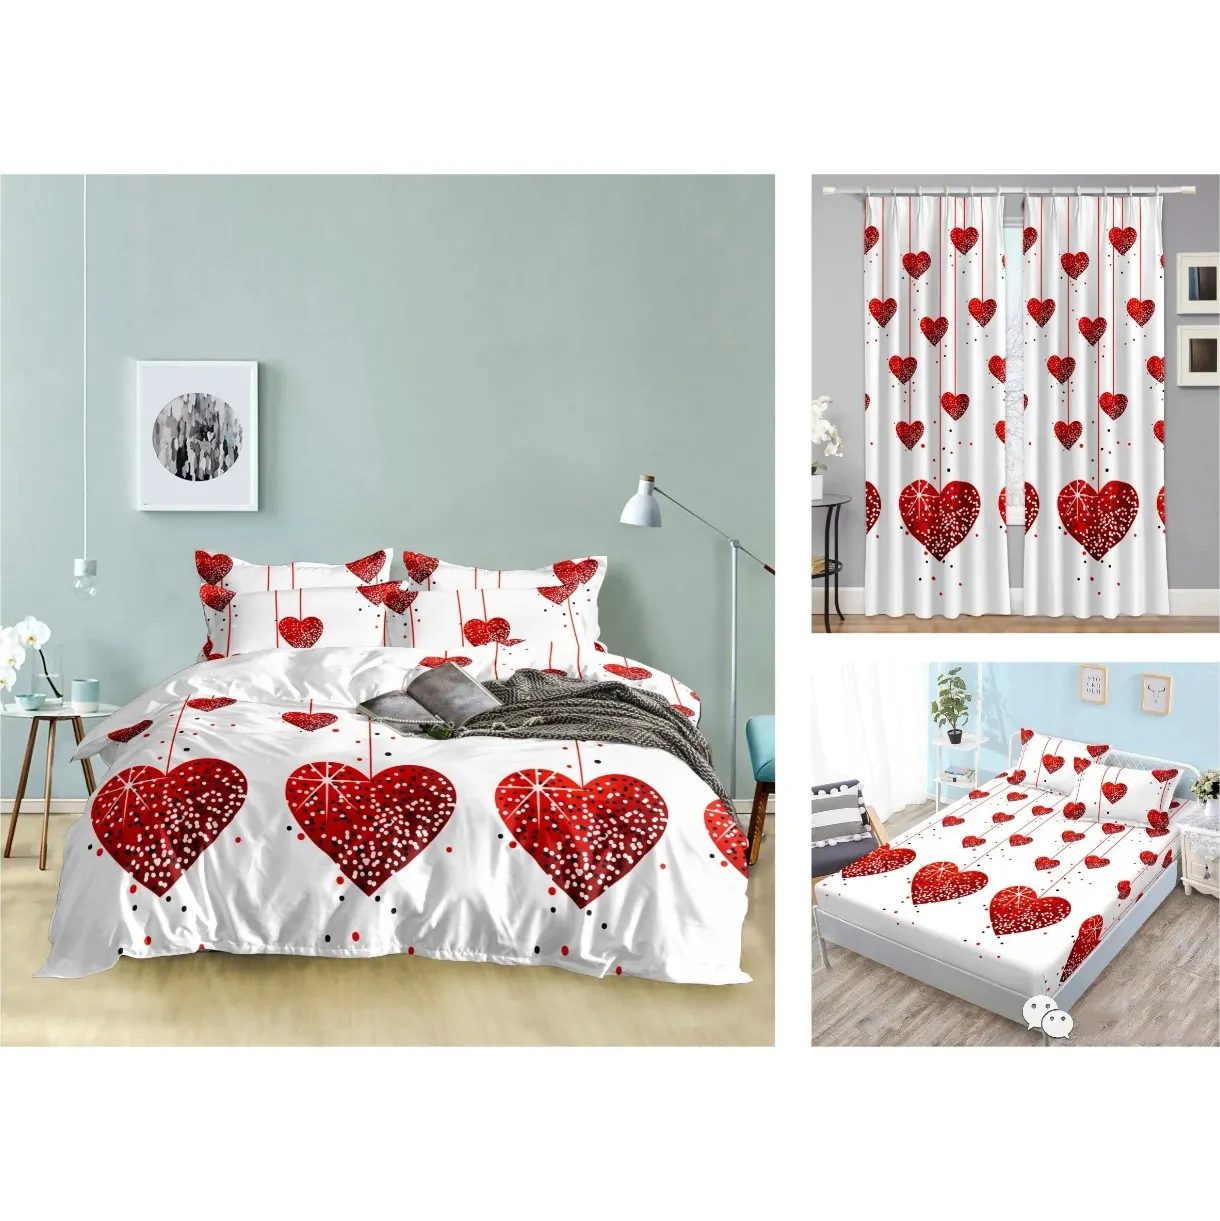 Hotsale 100% Polyester gedruckt weiß schwarz Farbe Herz Liebe Muster Bettlaken Schlafzimmer Bettwäsche Set passenden Vorhang